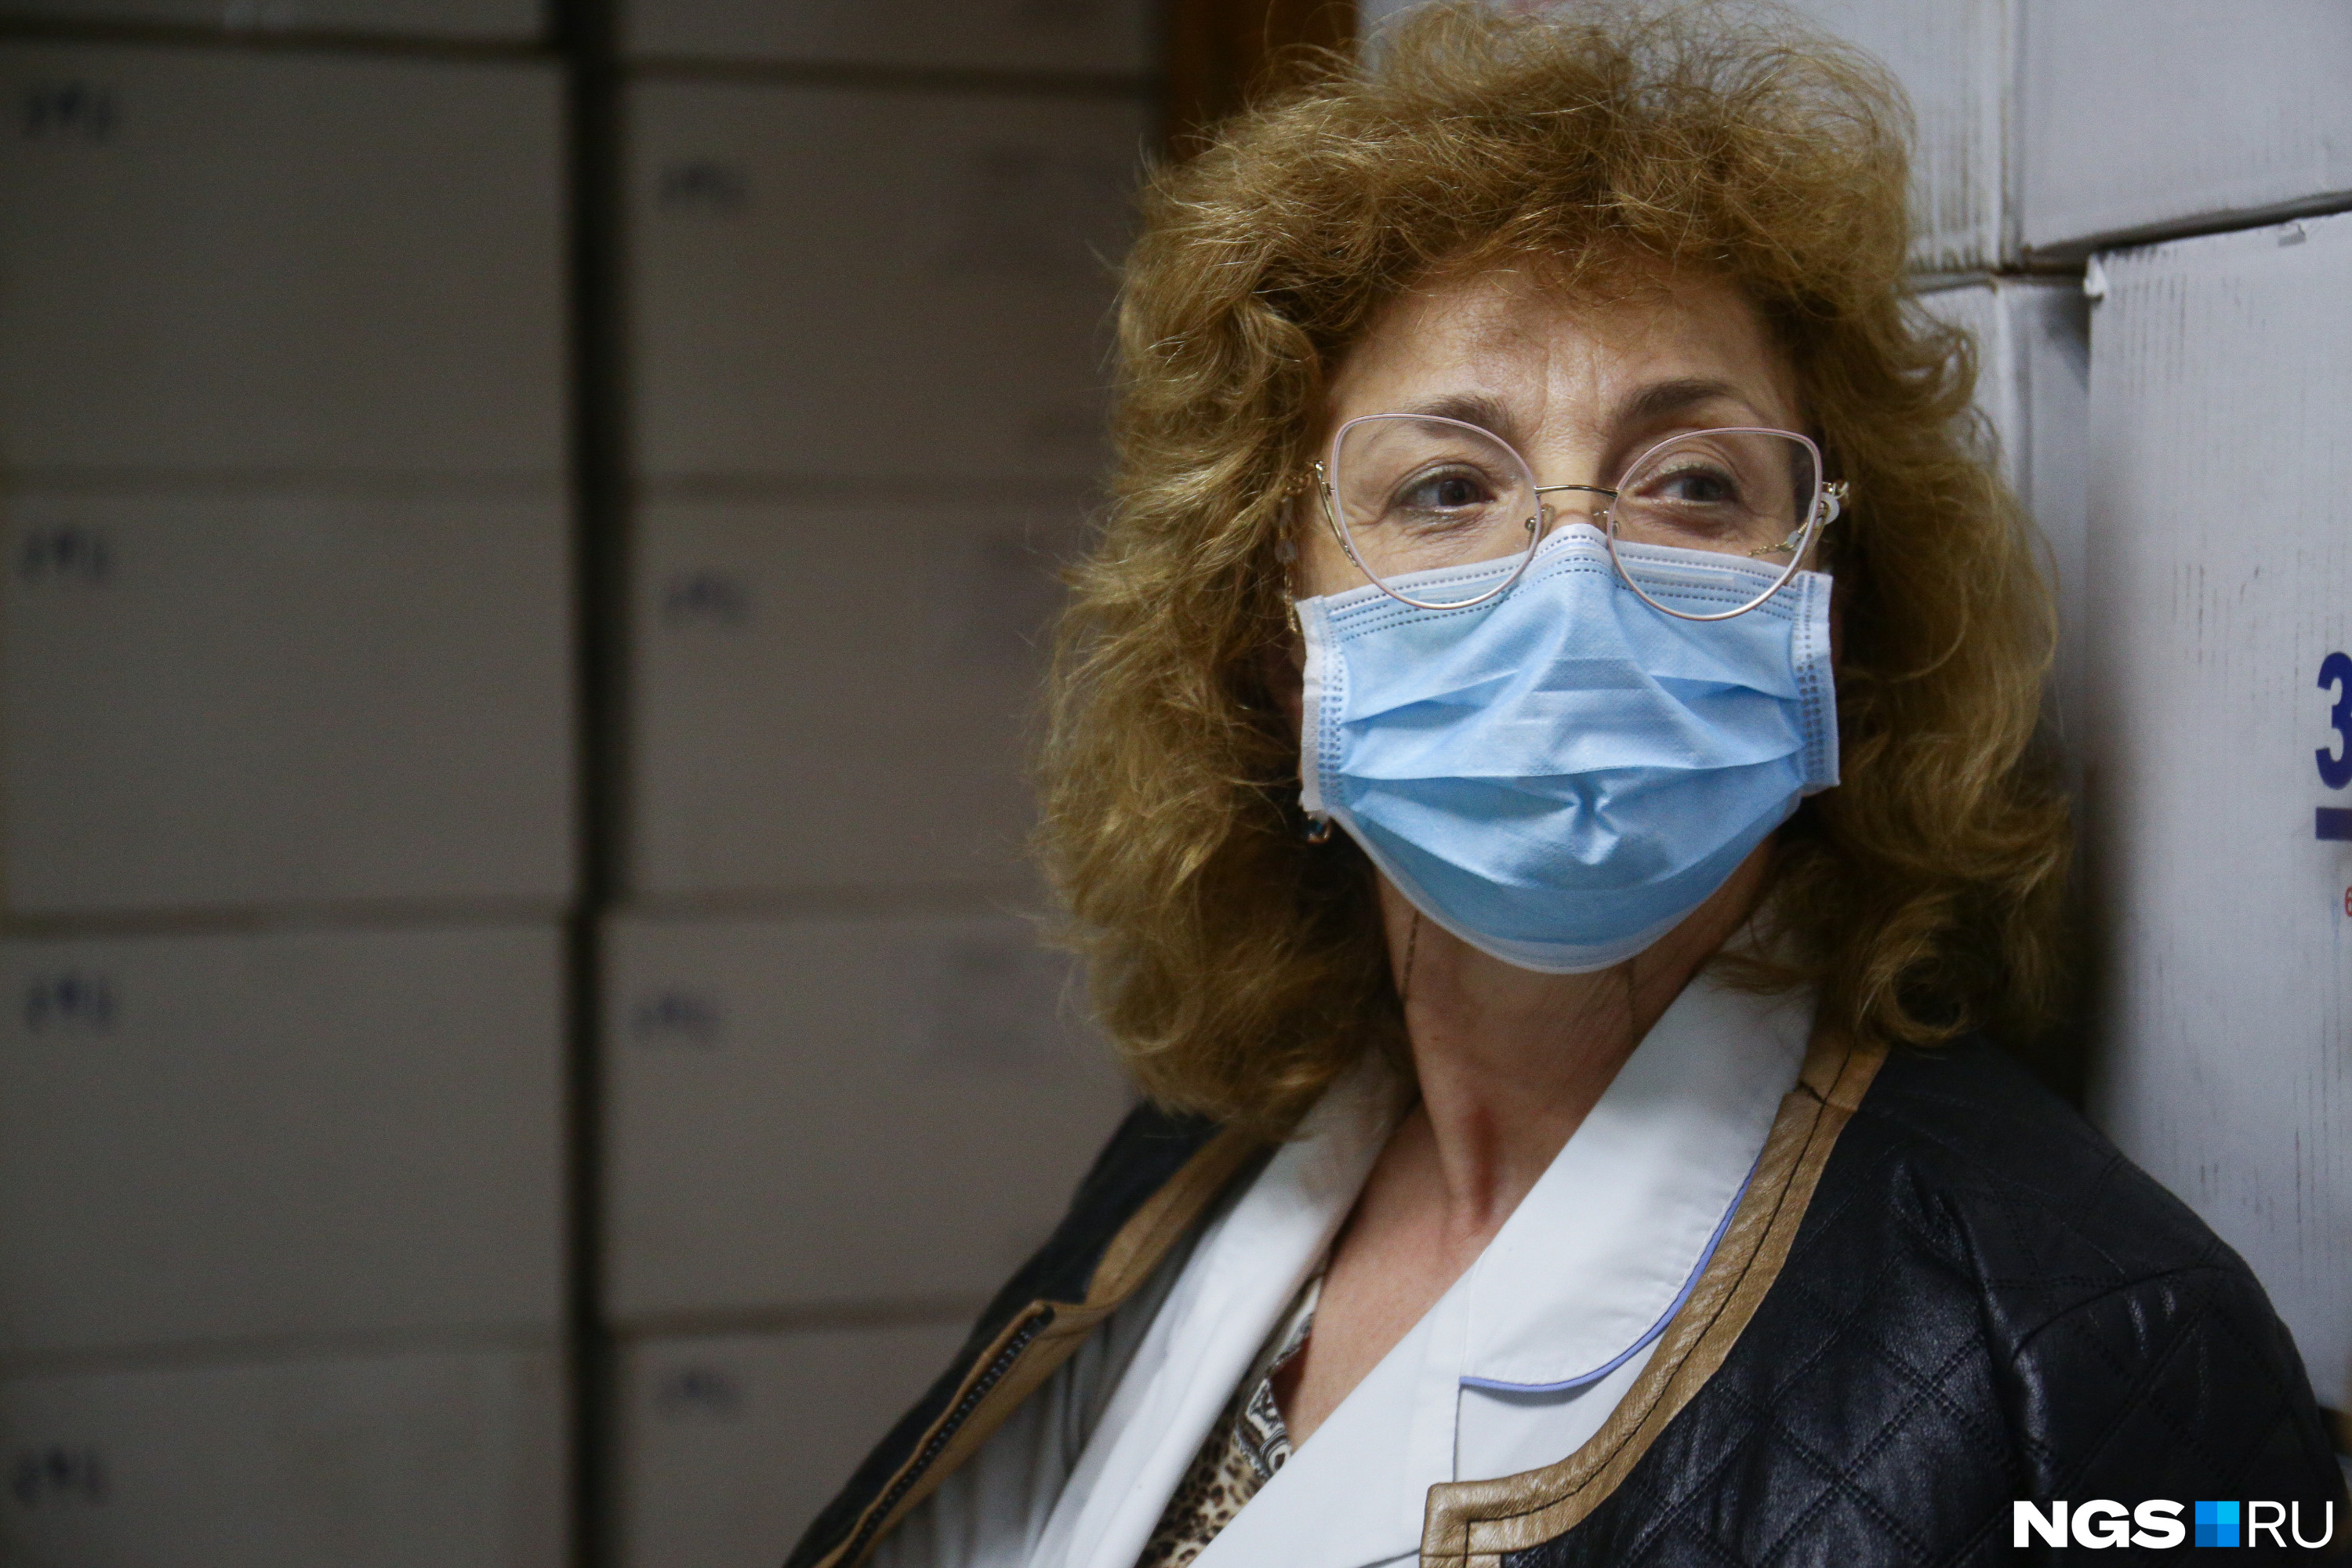 Начмед Полина Казимировна сталкивается с волной коронавируса уже в третий раз. Она говорит, что в прошлые разы ее коллеги заболевали. «Слава богу, все живы, никого не потеряли», — замечает она